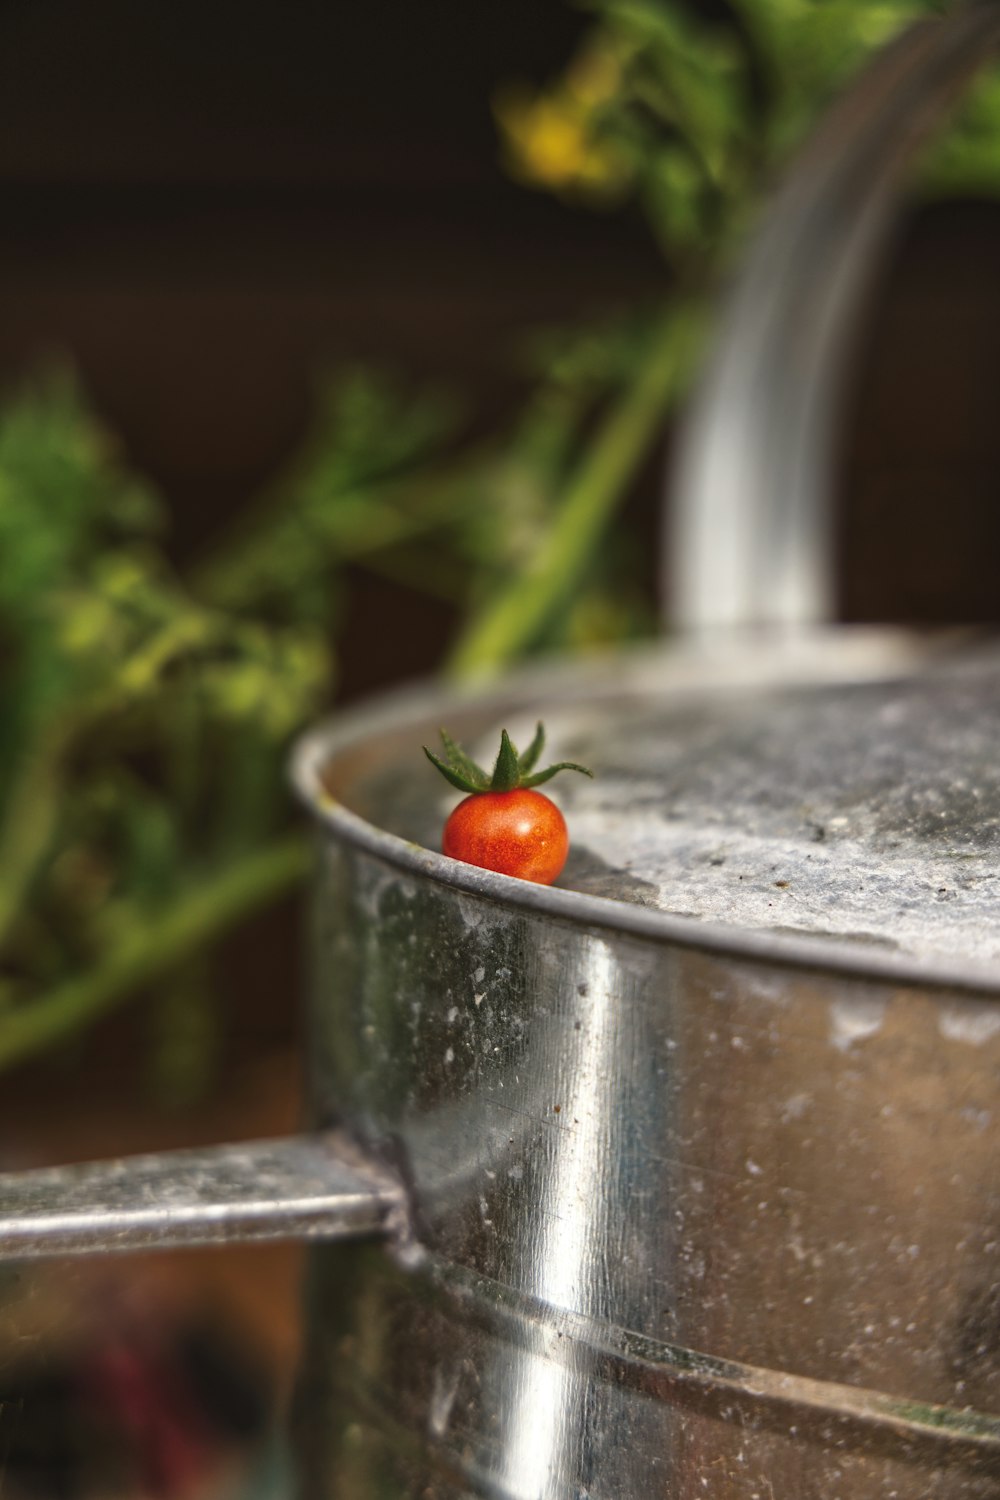 Un tomate sentado encima de una olla de metal